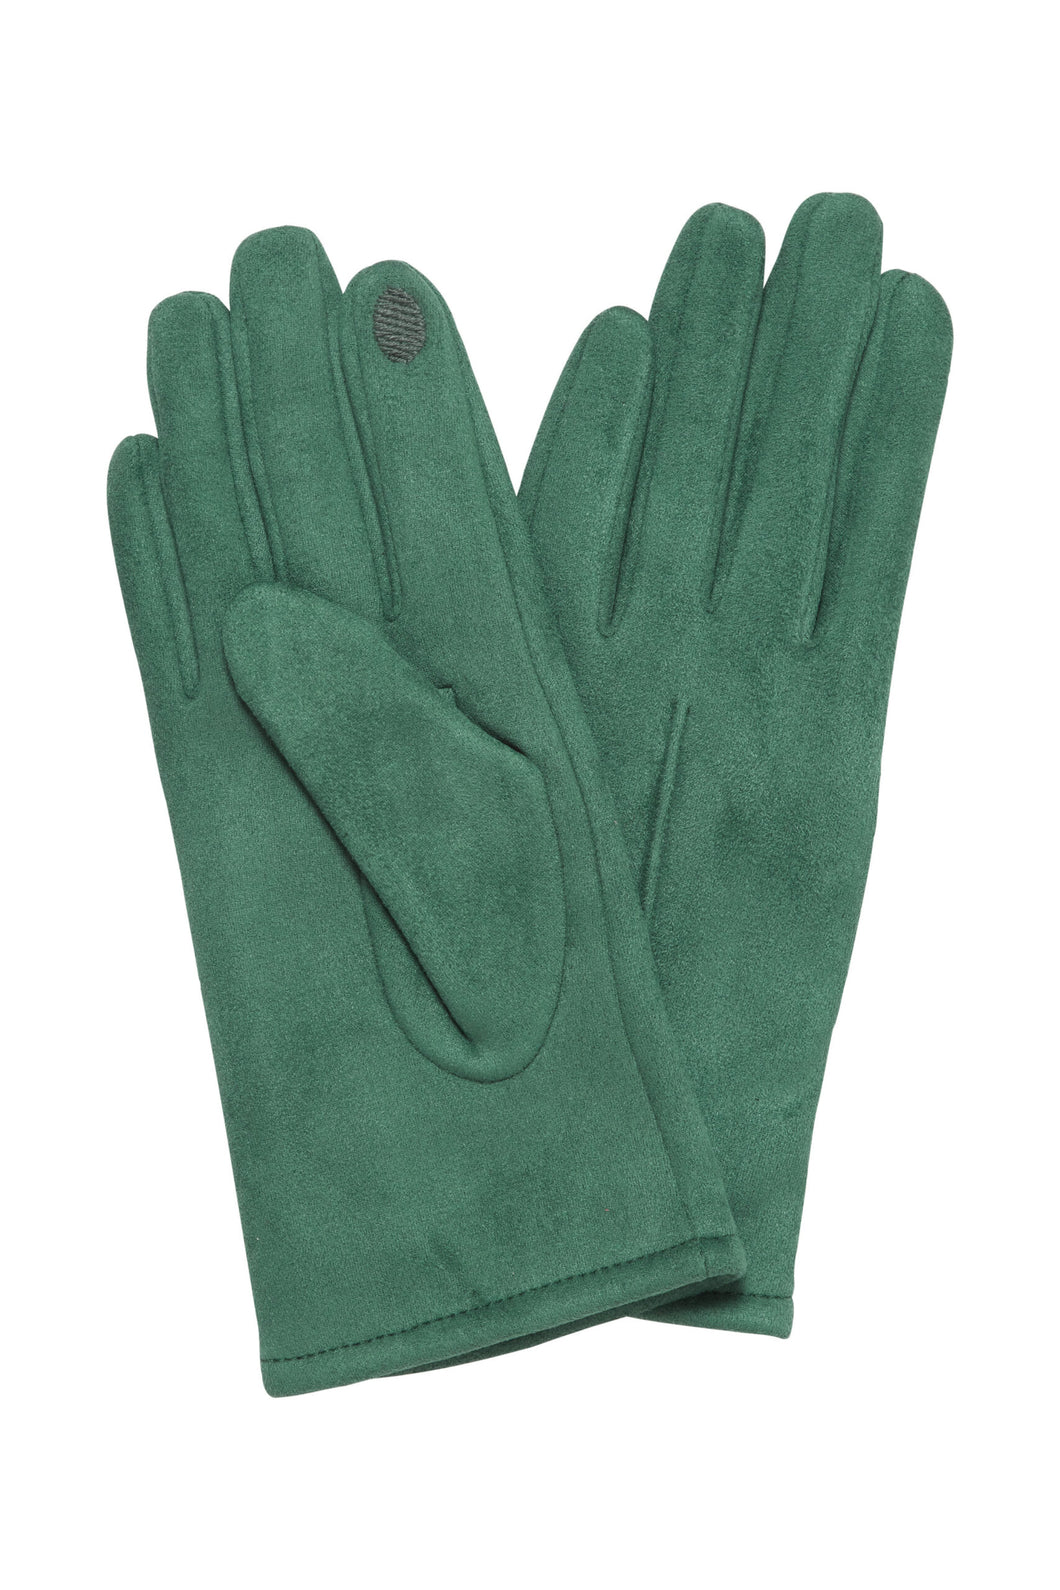 Ichi Pammi Gloves ~ Cadmium Green